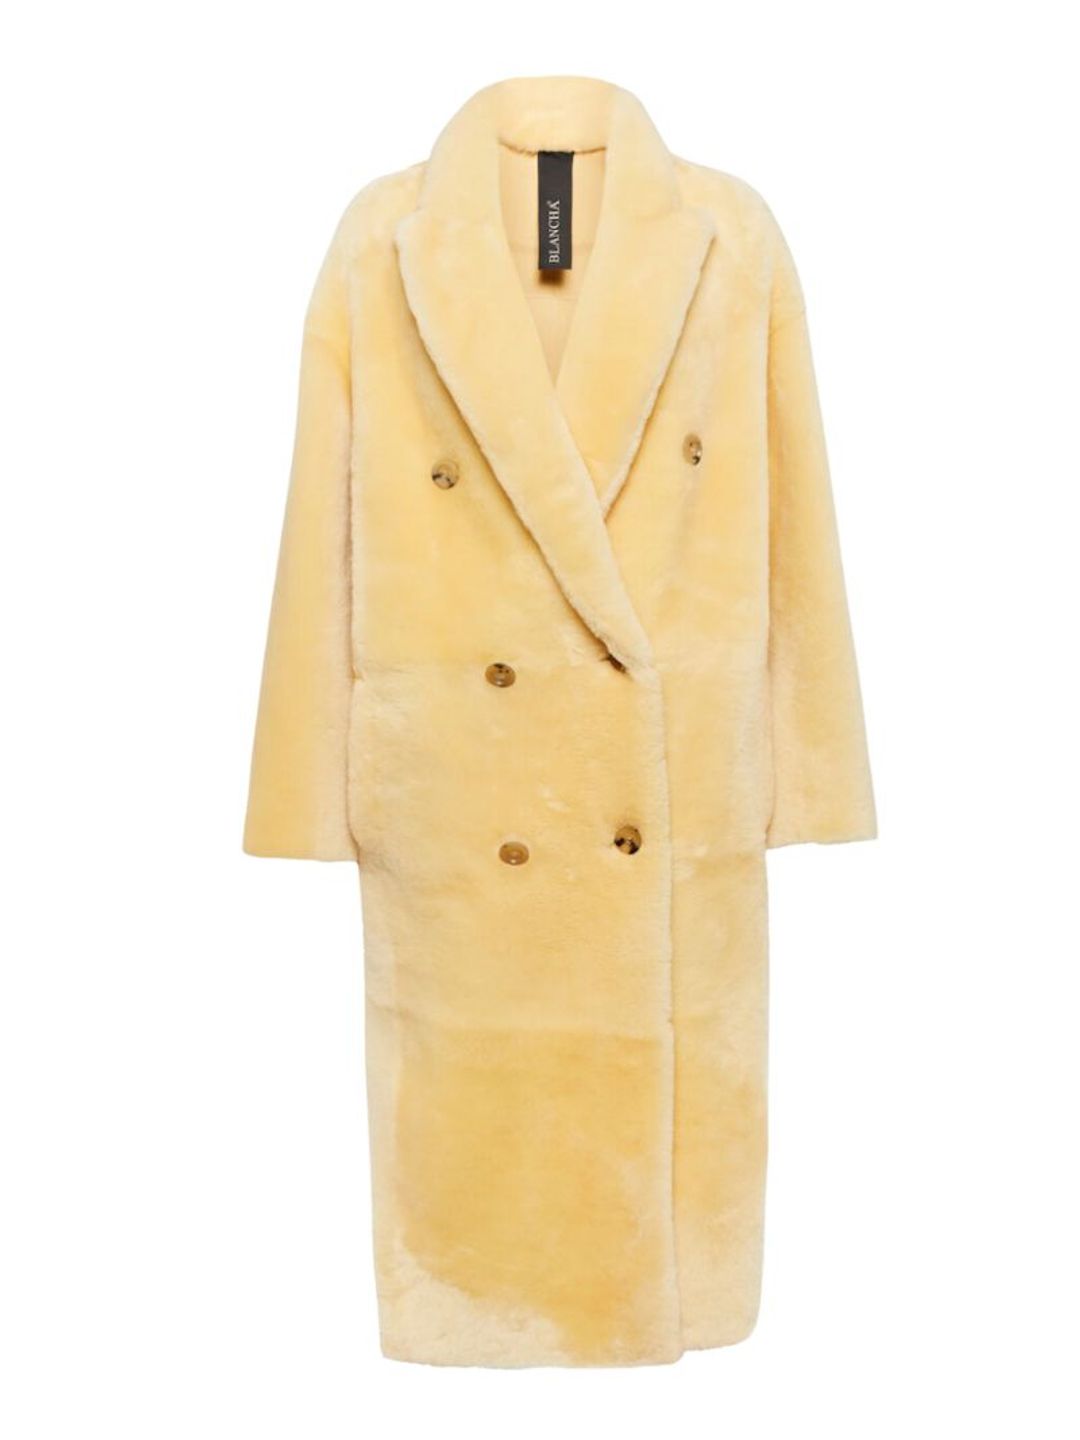 Buttermilk yellow fluffy coat 